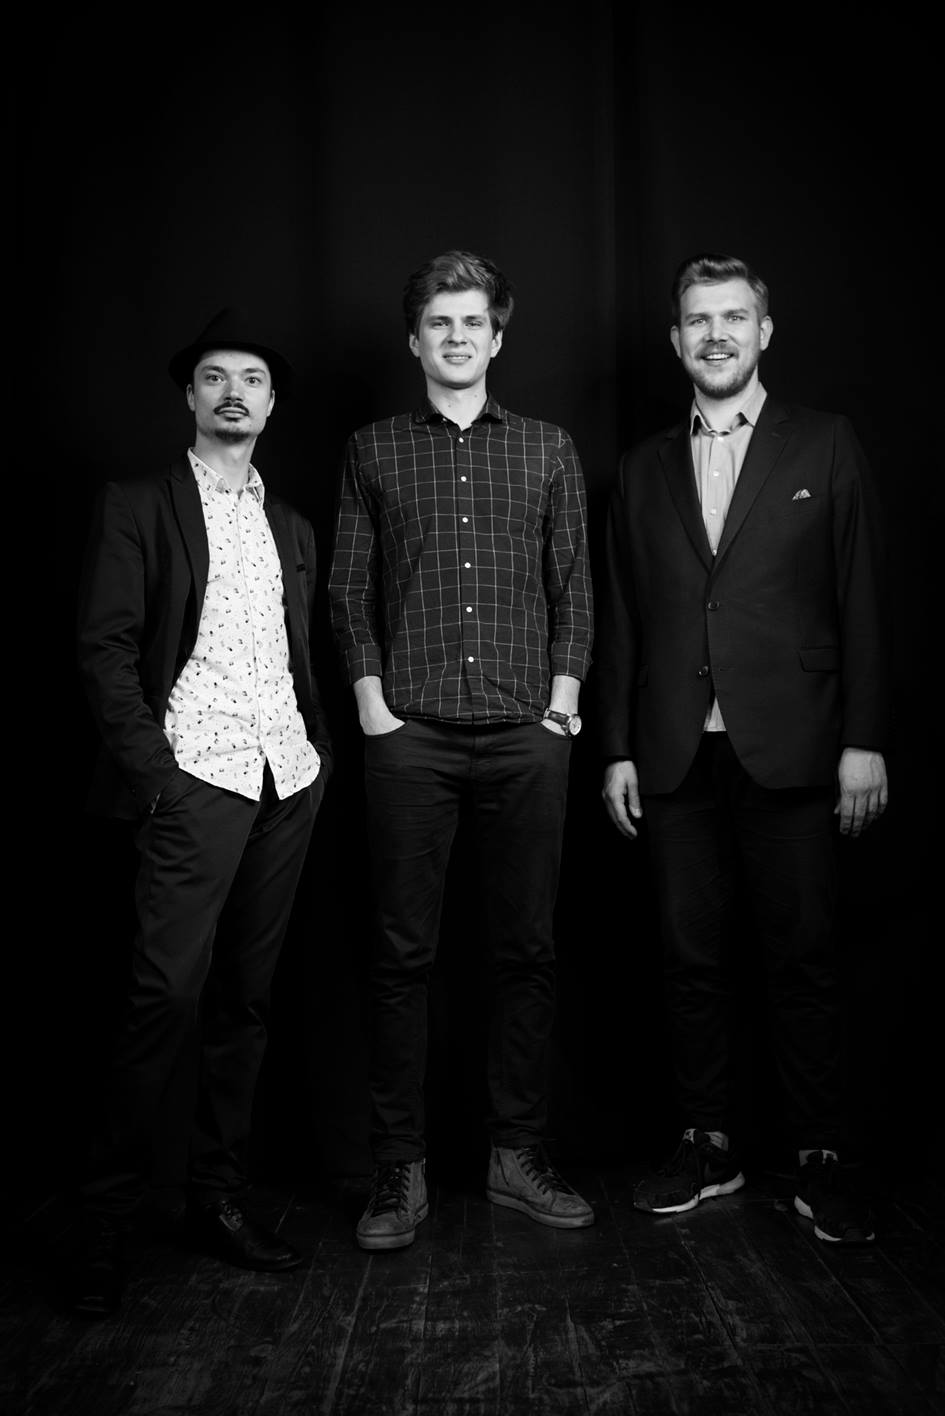 fotografia czarno biała: trzech młodych mężczyzn stoi obok siebie, na ciemnym tle